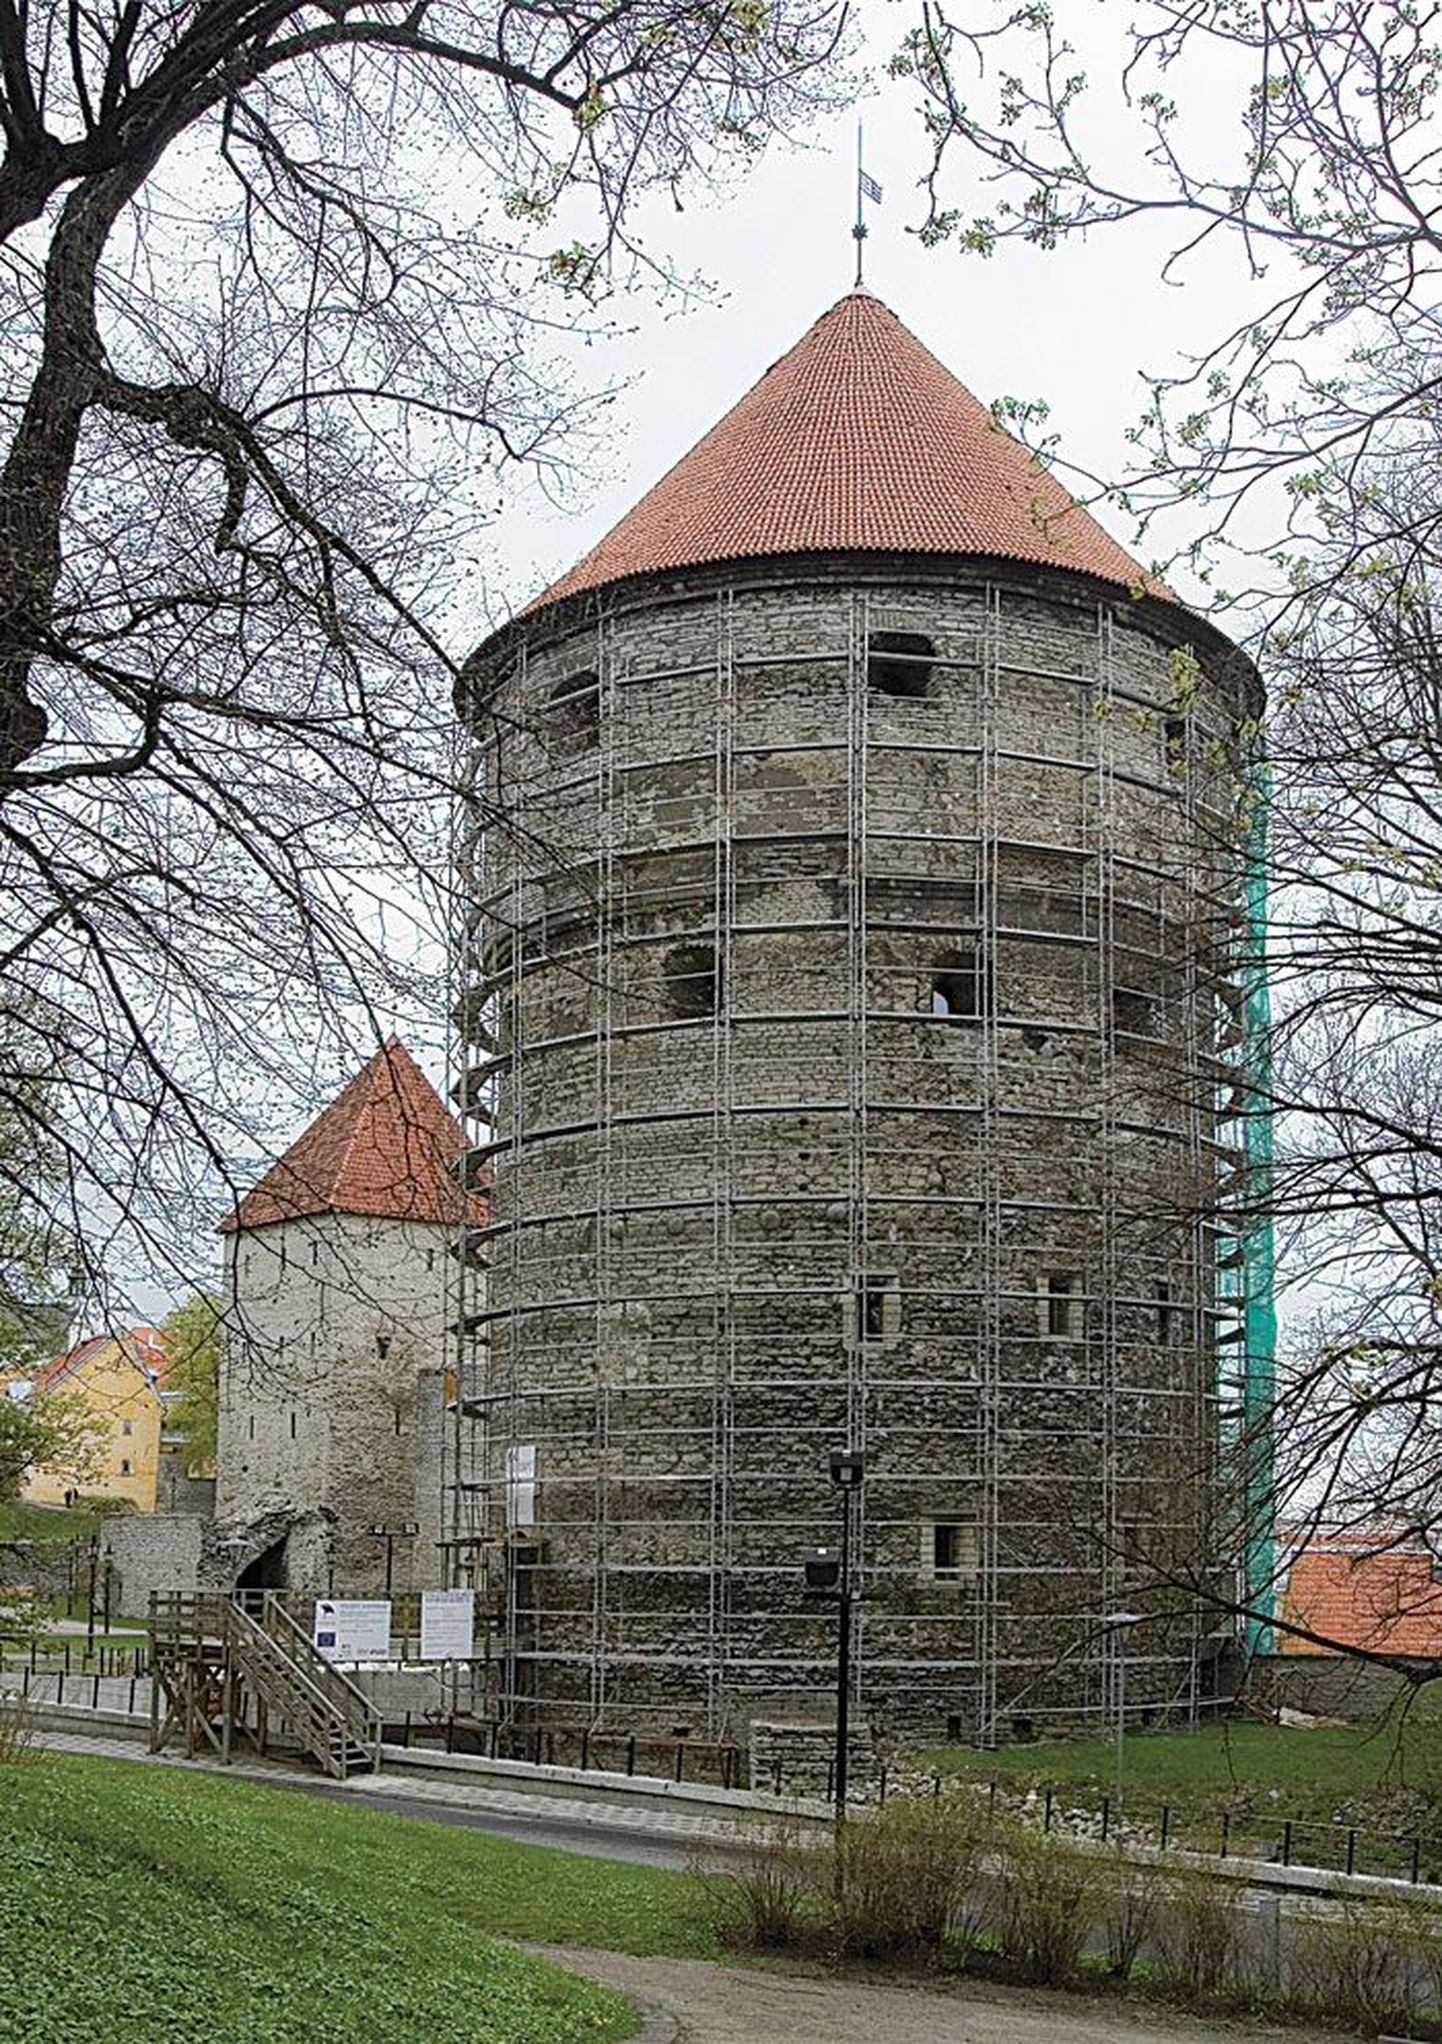 Башня Кик-ин-де-Кек.